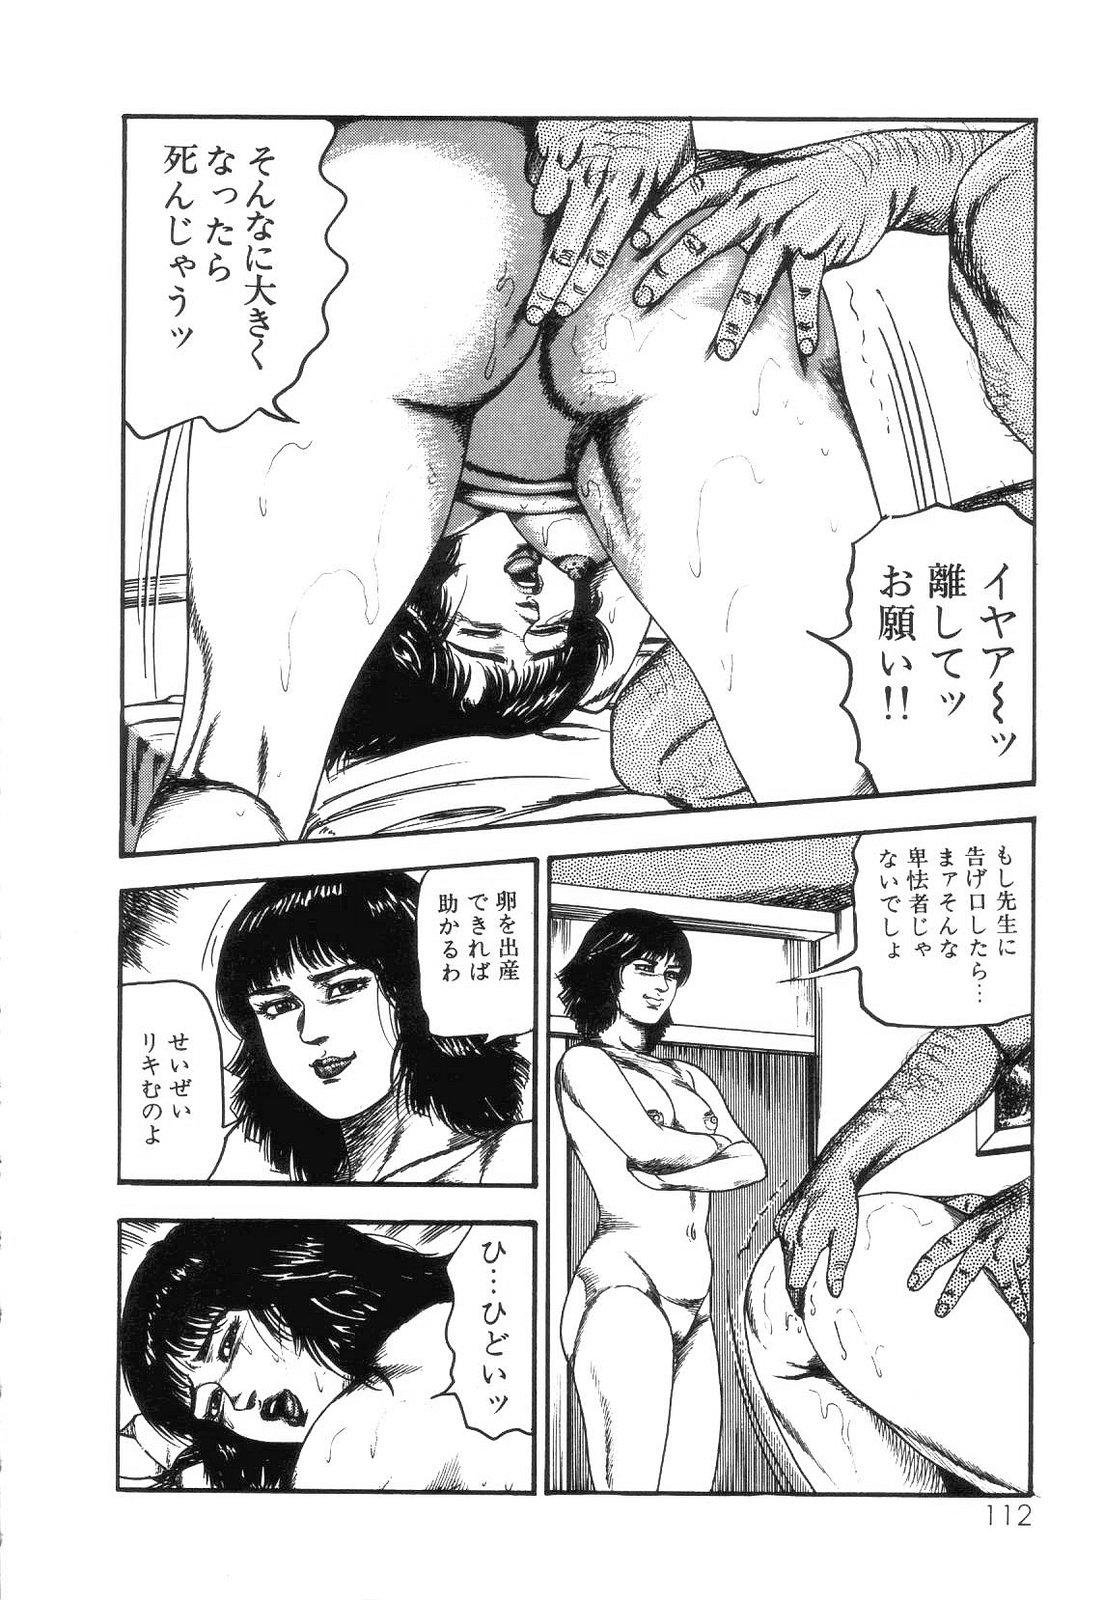 Shiro no Mokushiroku Vol. 4 - Bichiku Karen no Shou 113